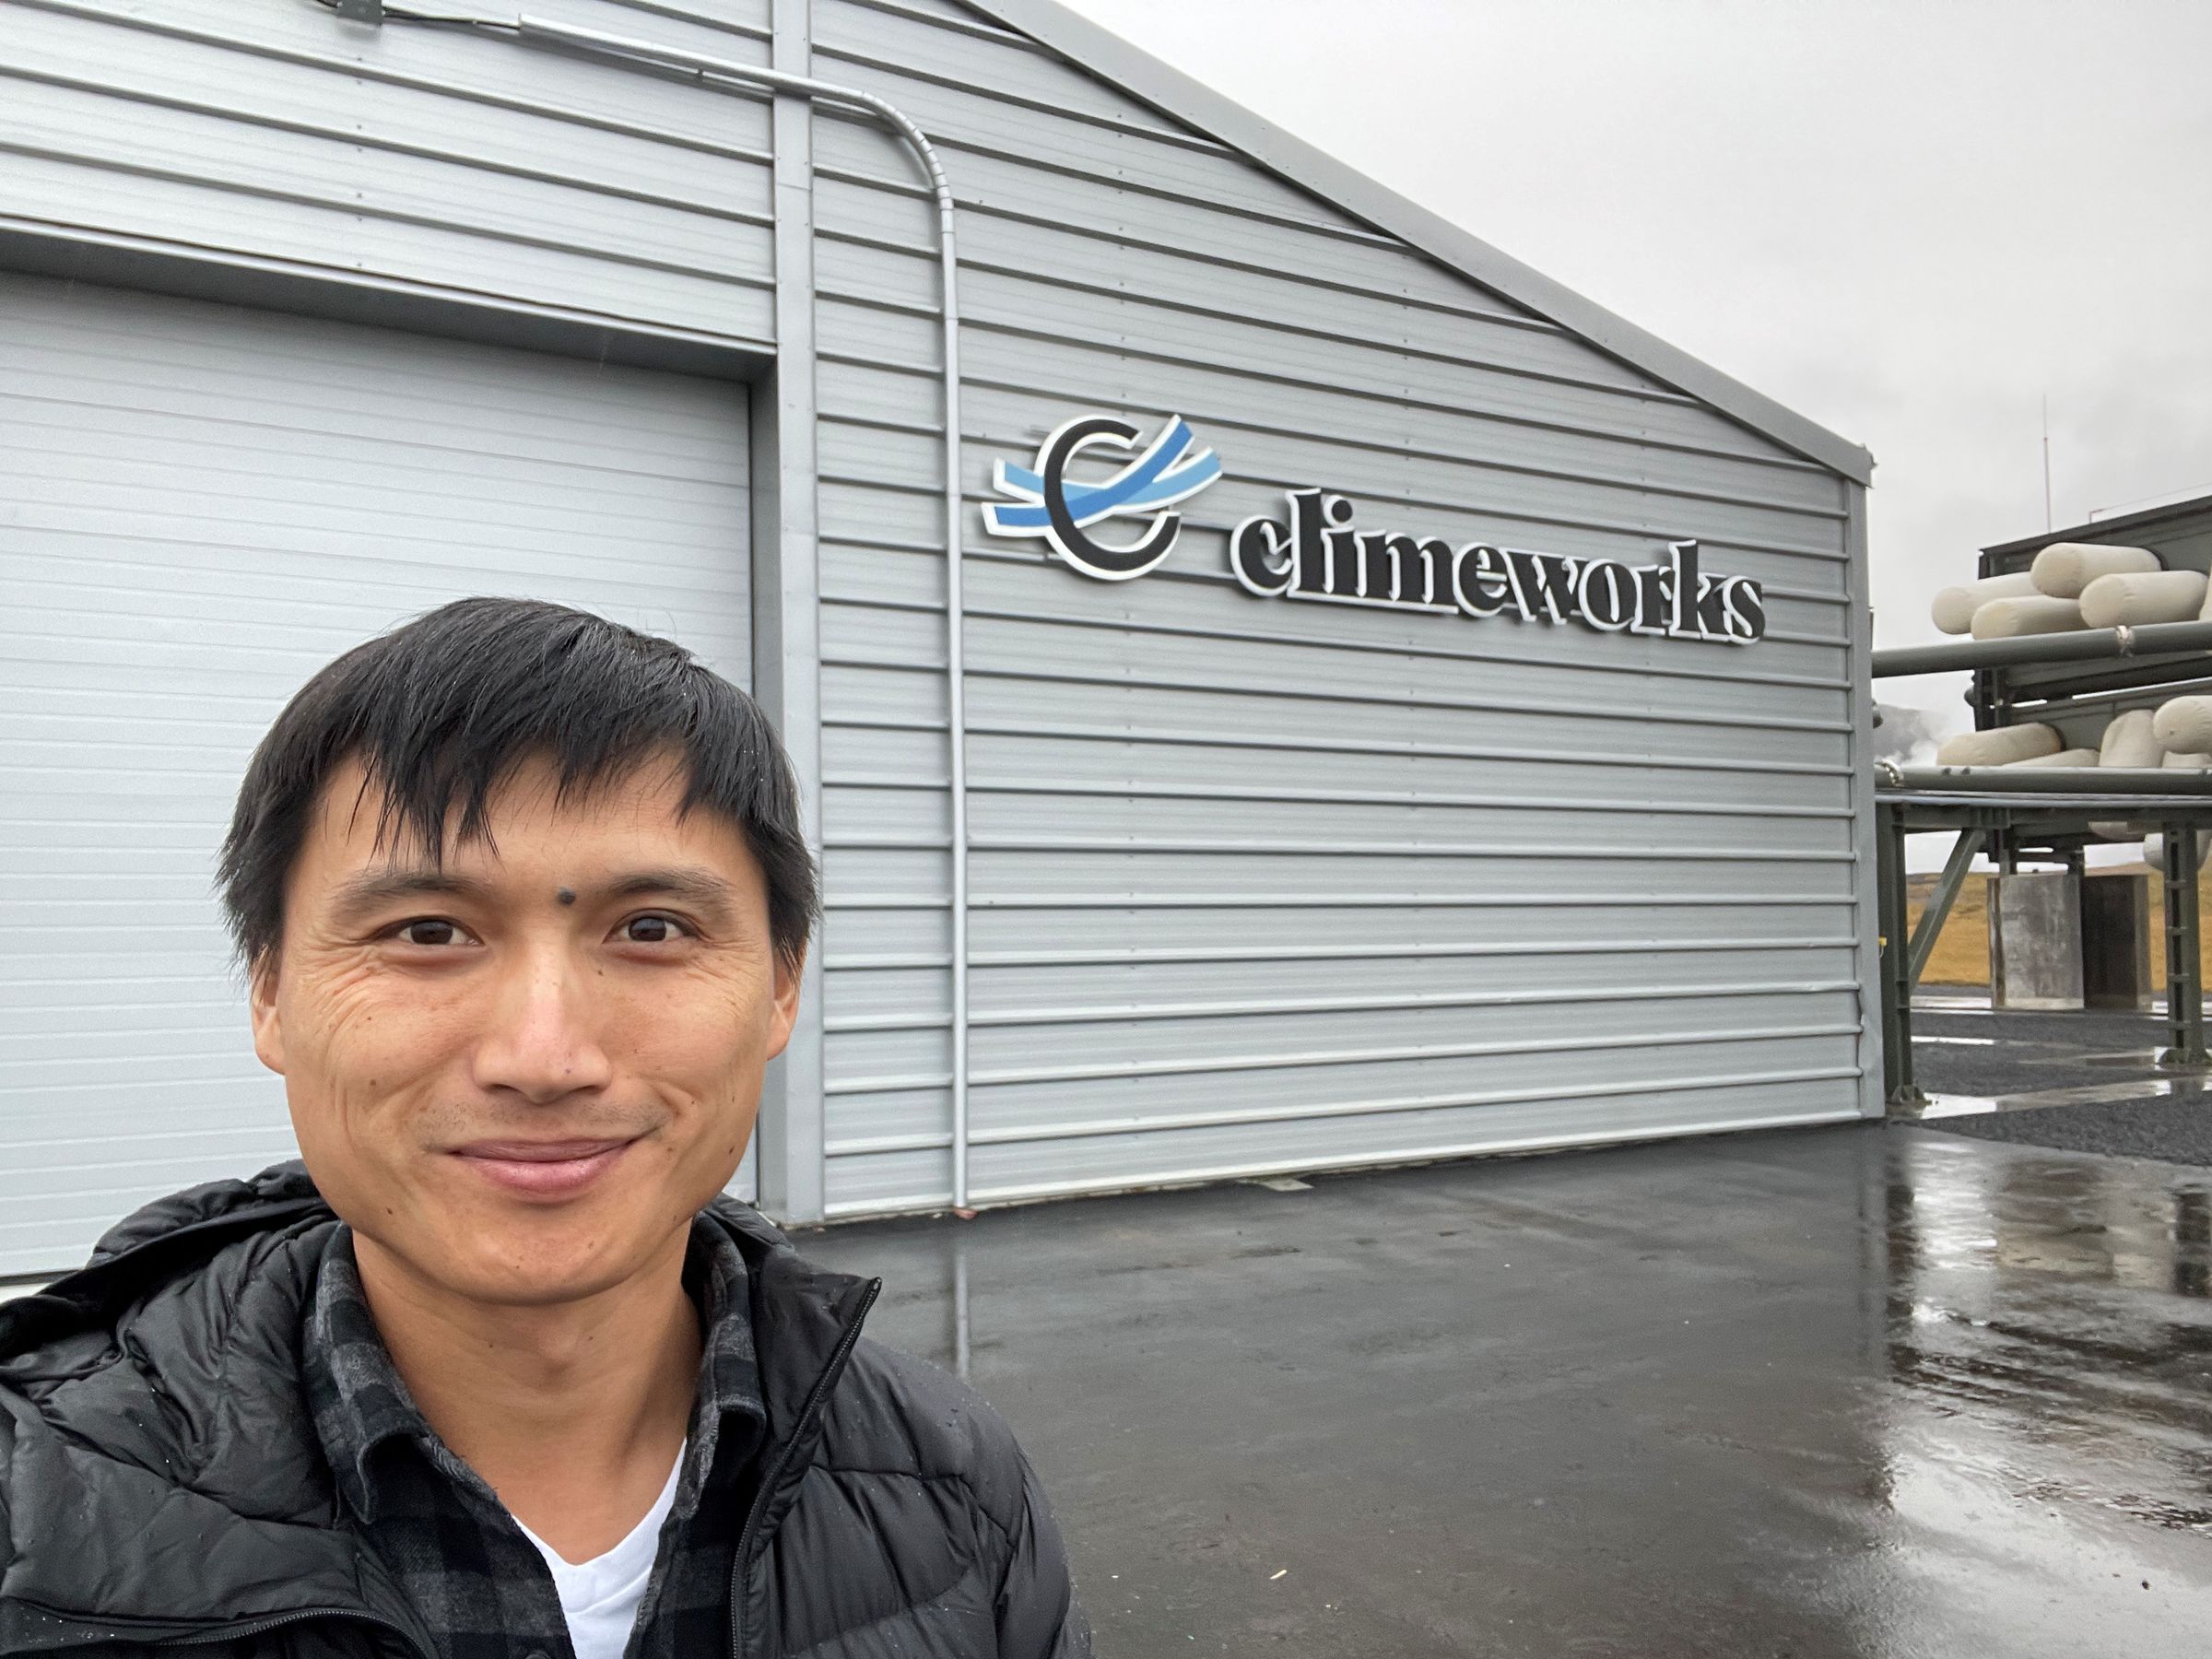 Chan fica na frente de um prédio que diz “Climeworks”.